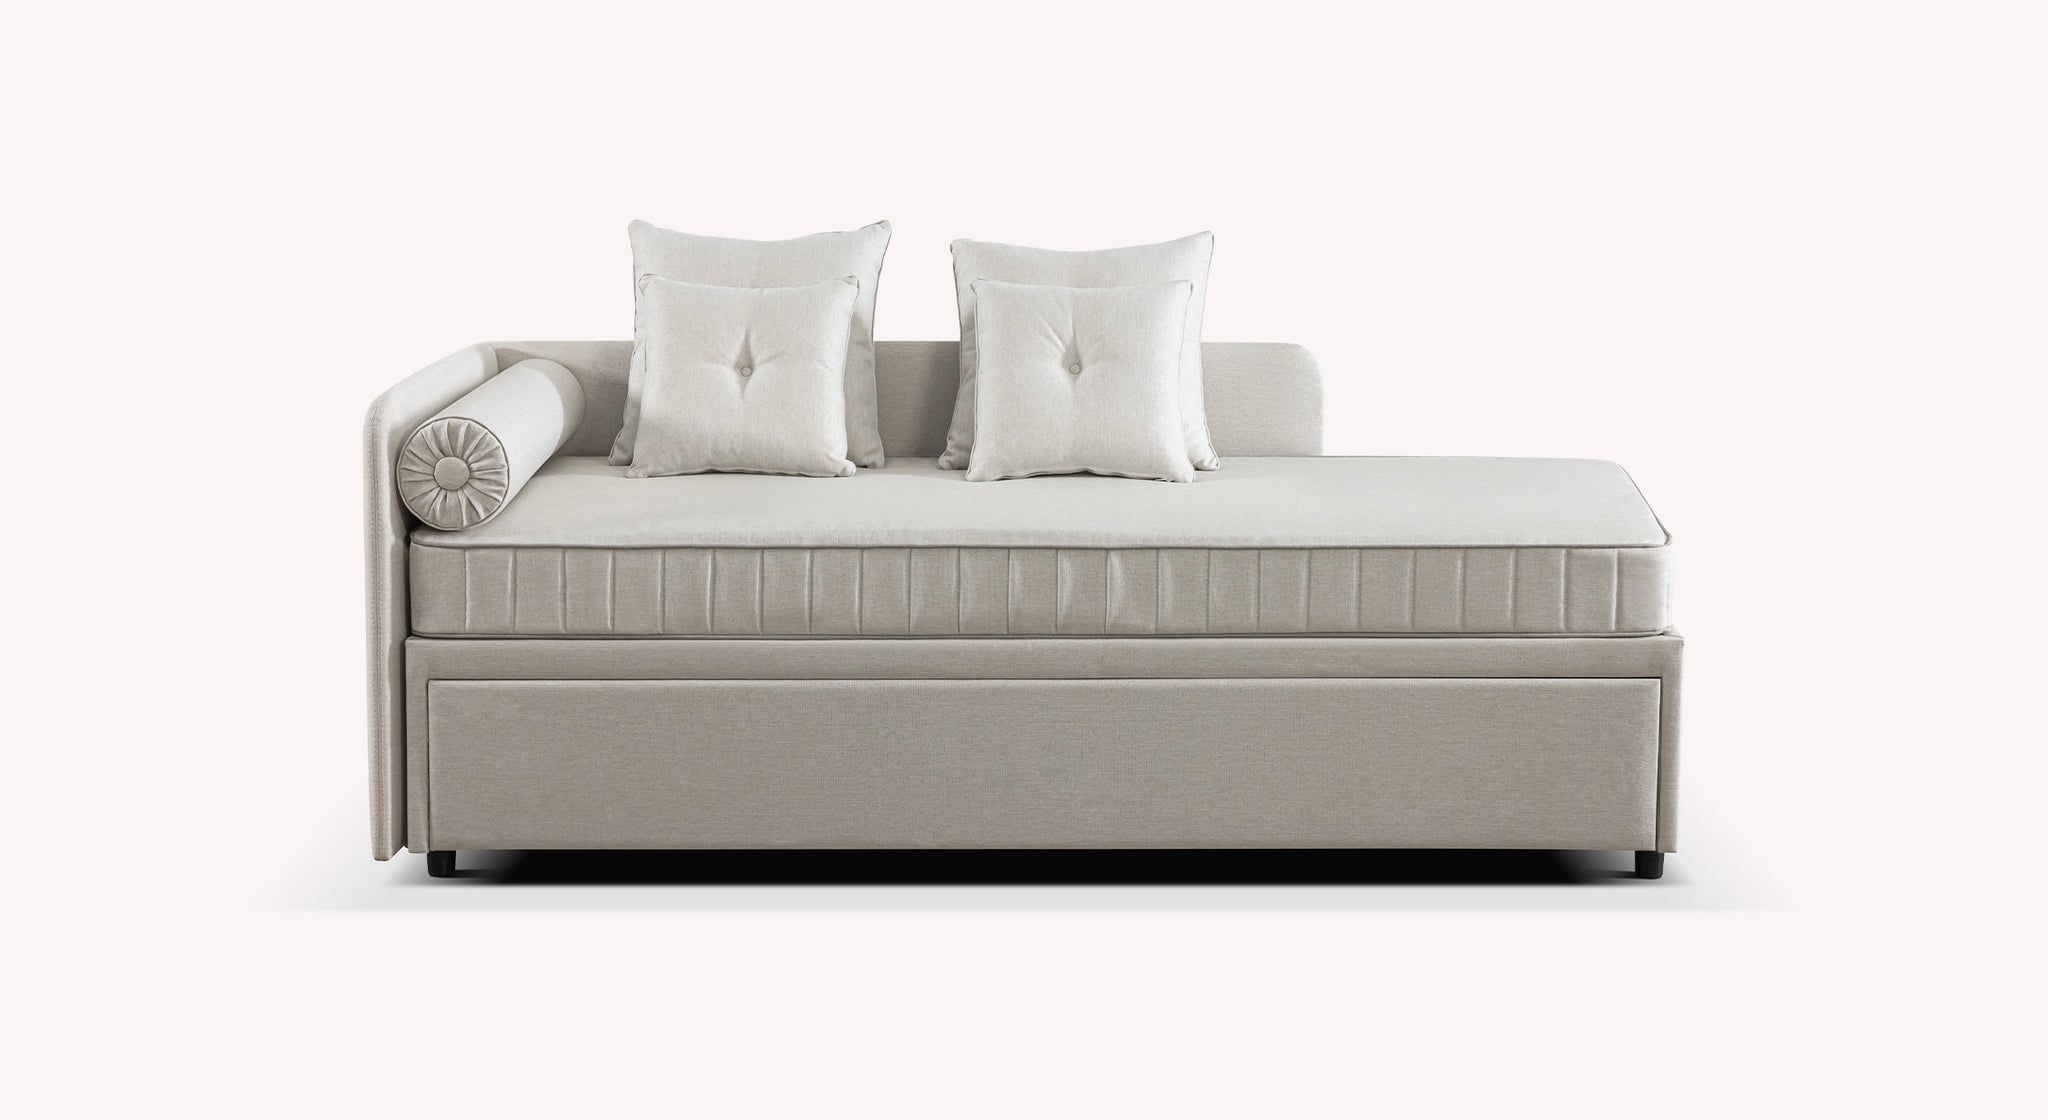 Canapé lit gigogne confortable haut de gamme en livraison rapide Flo